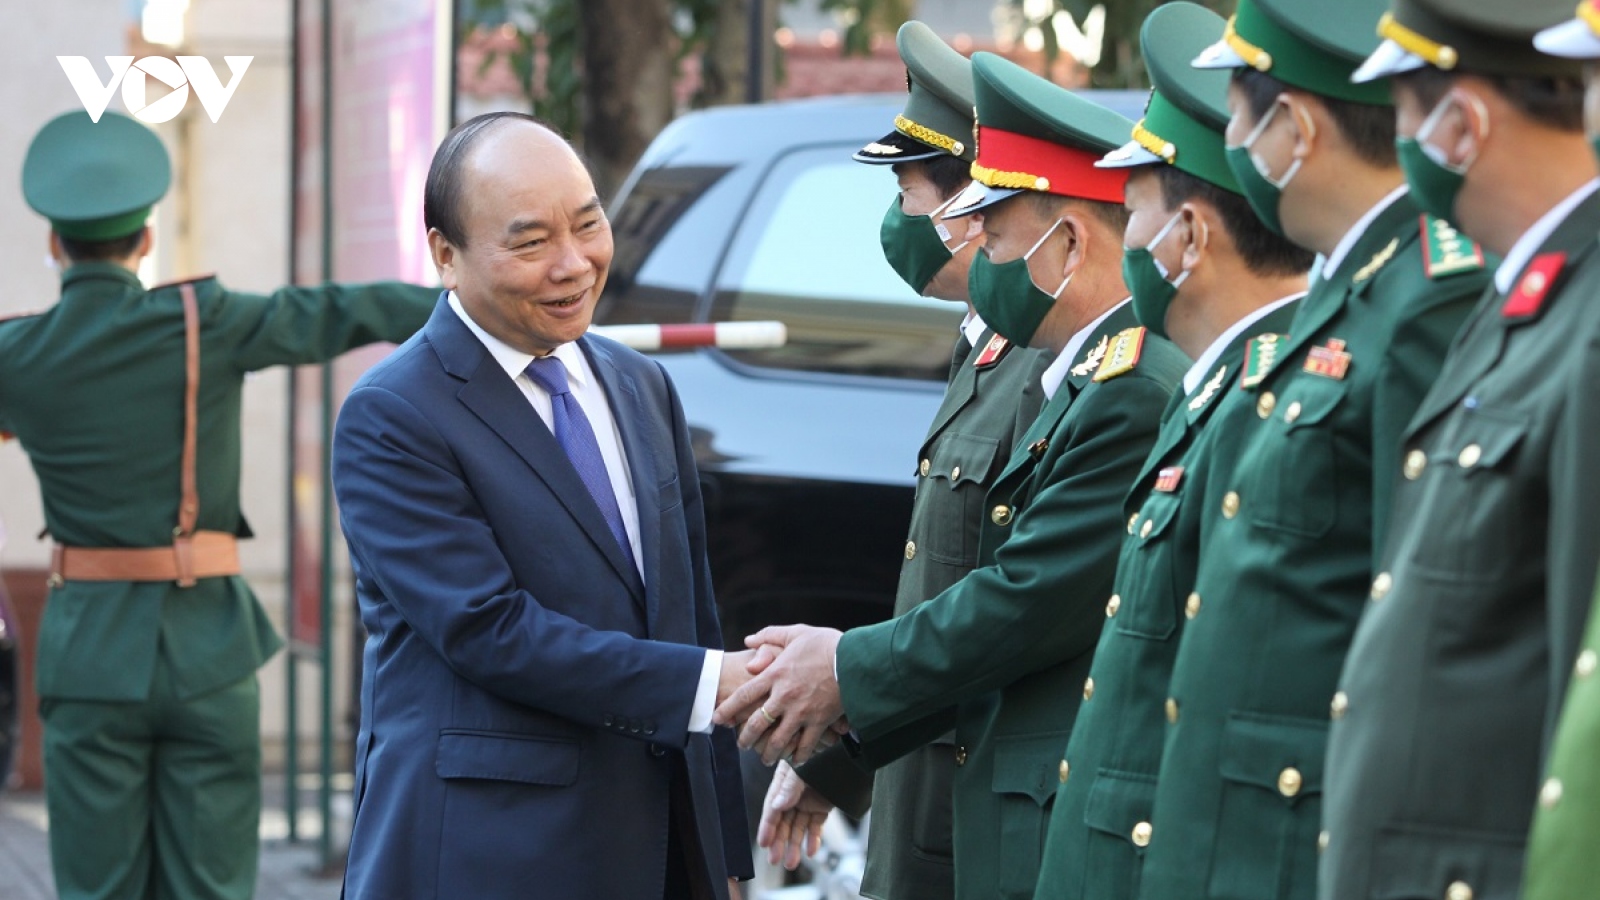 Thủ tướng Nguyễn Xuân Phúc thăm và chúc Tết tại thành phố Đà Nẵng